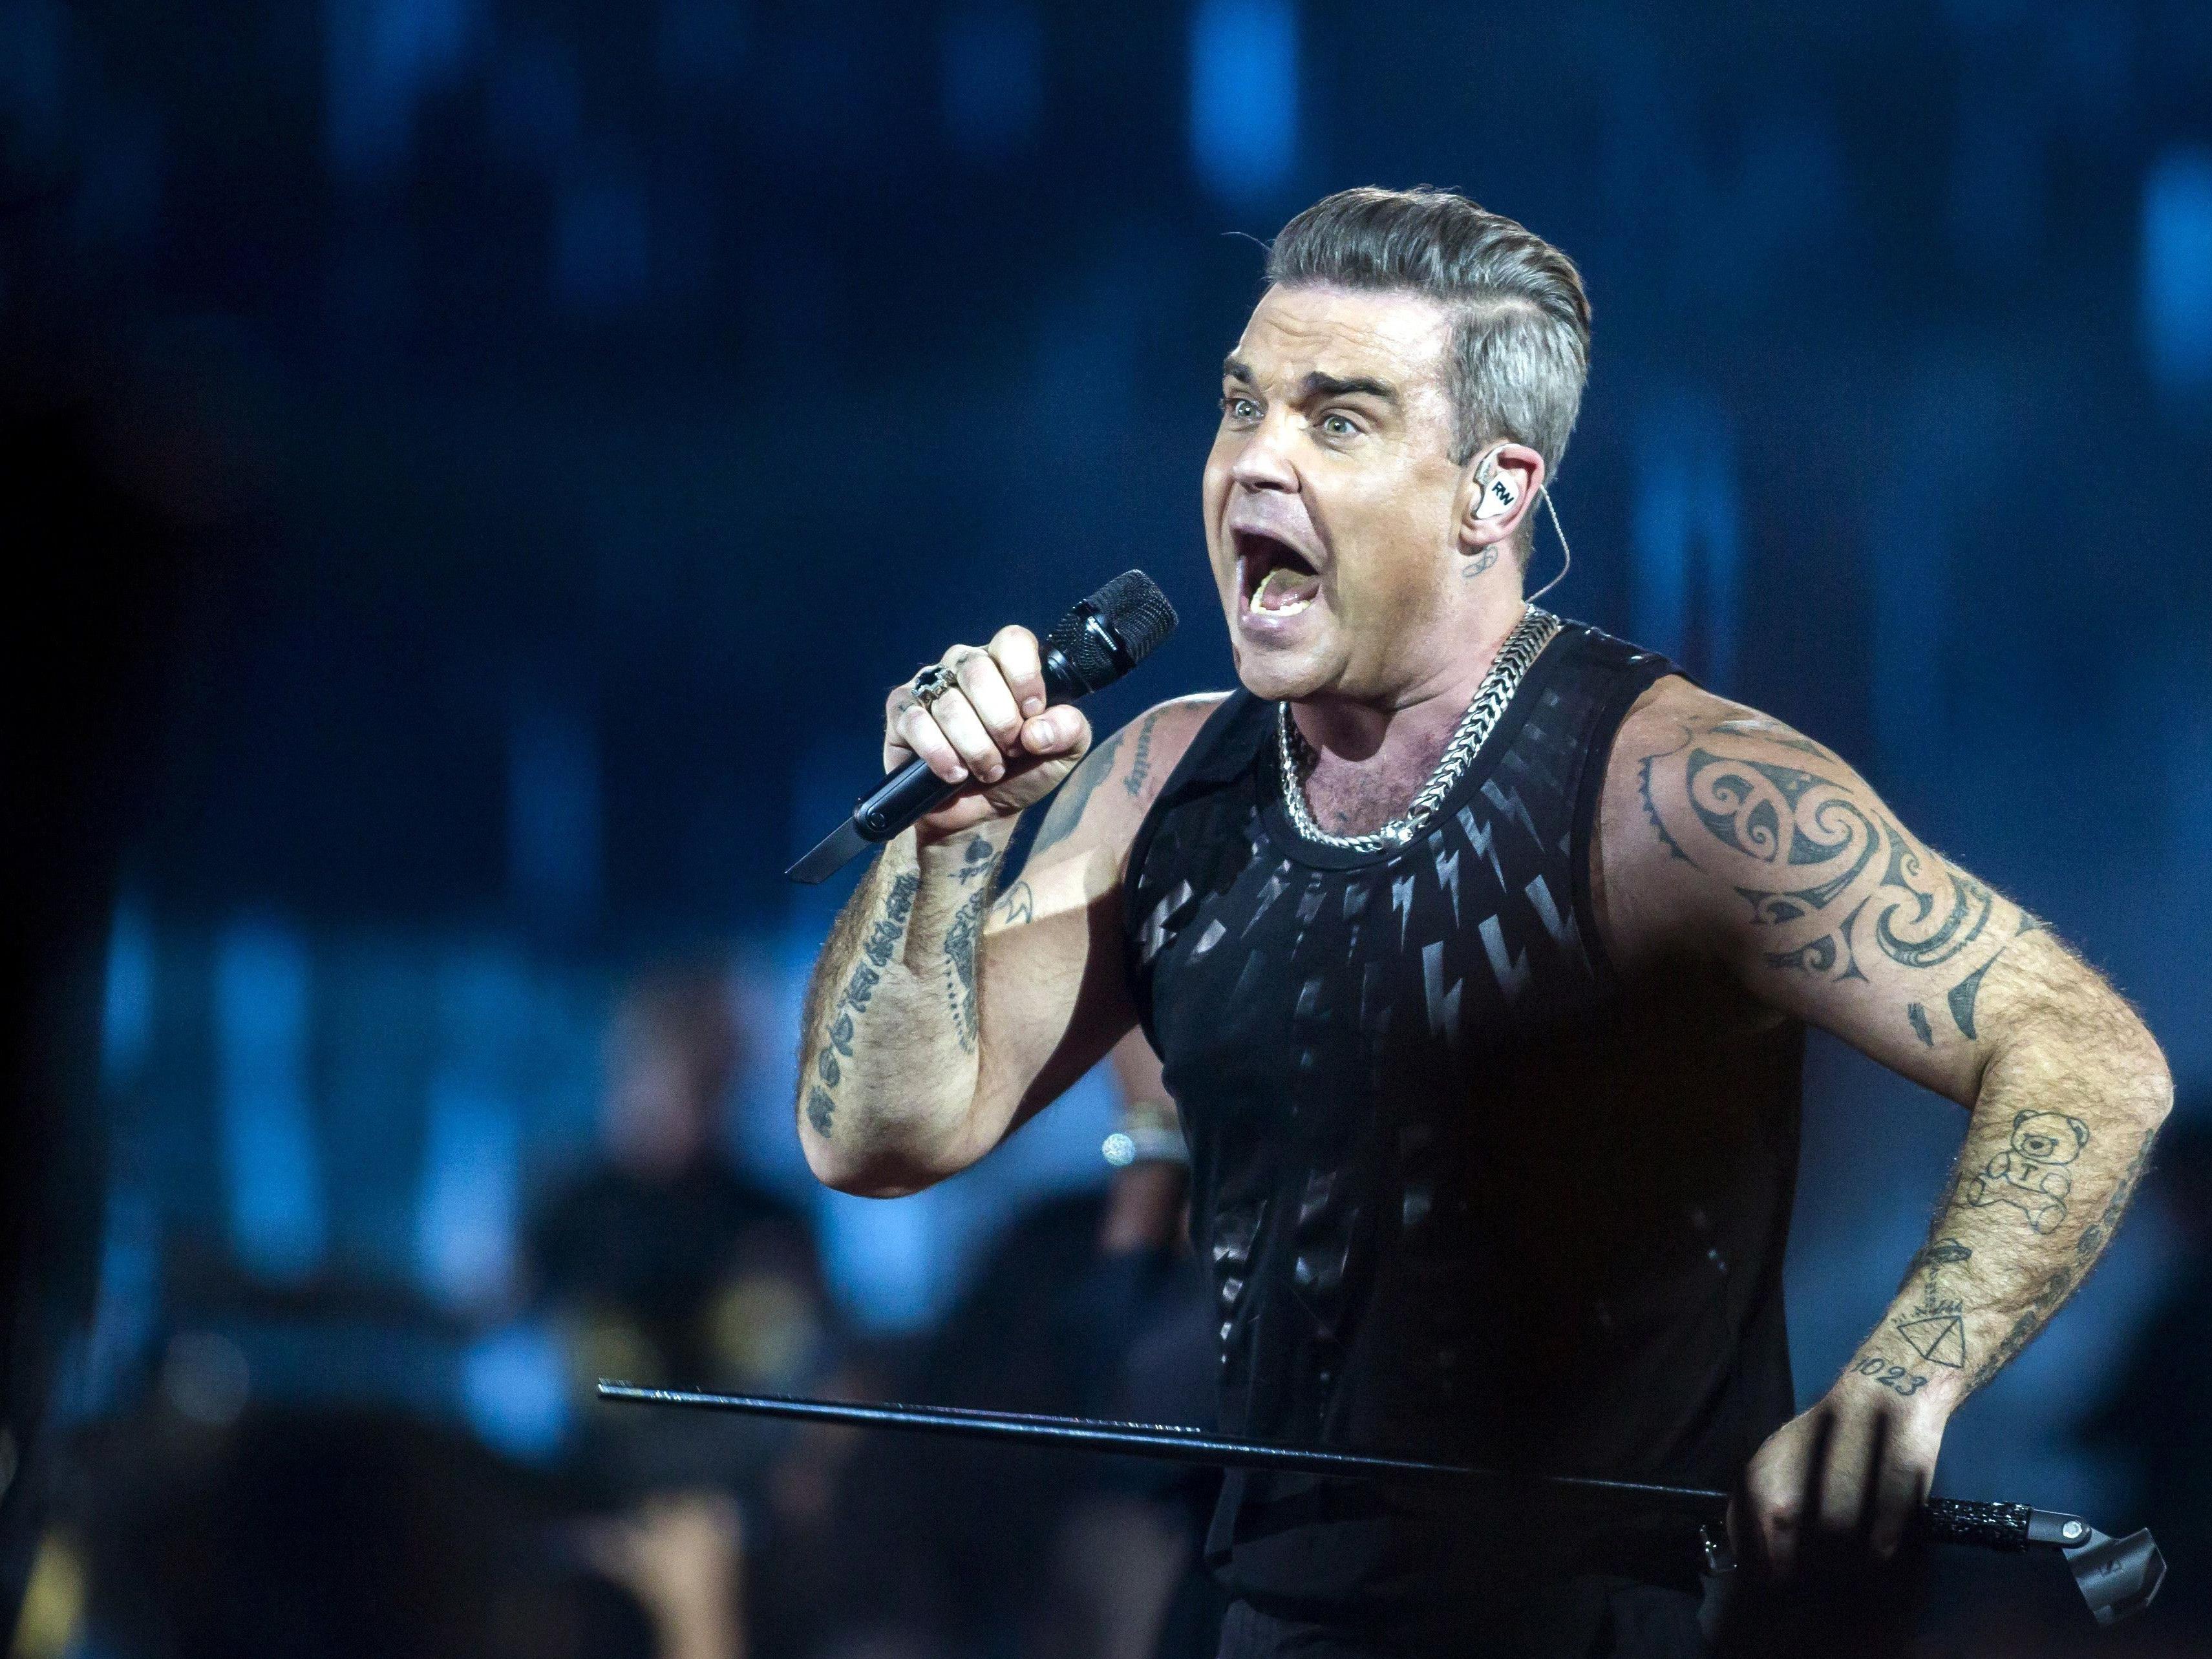 Tipps zur Anreise zum Robbie Williams Konzert im Wiener Ernst Happel Stadion.